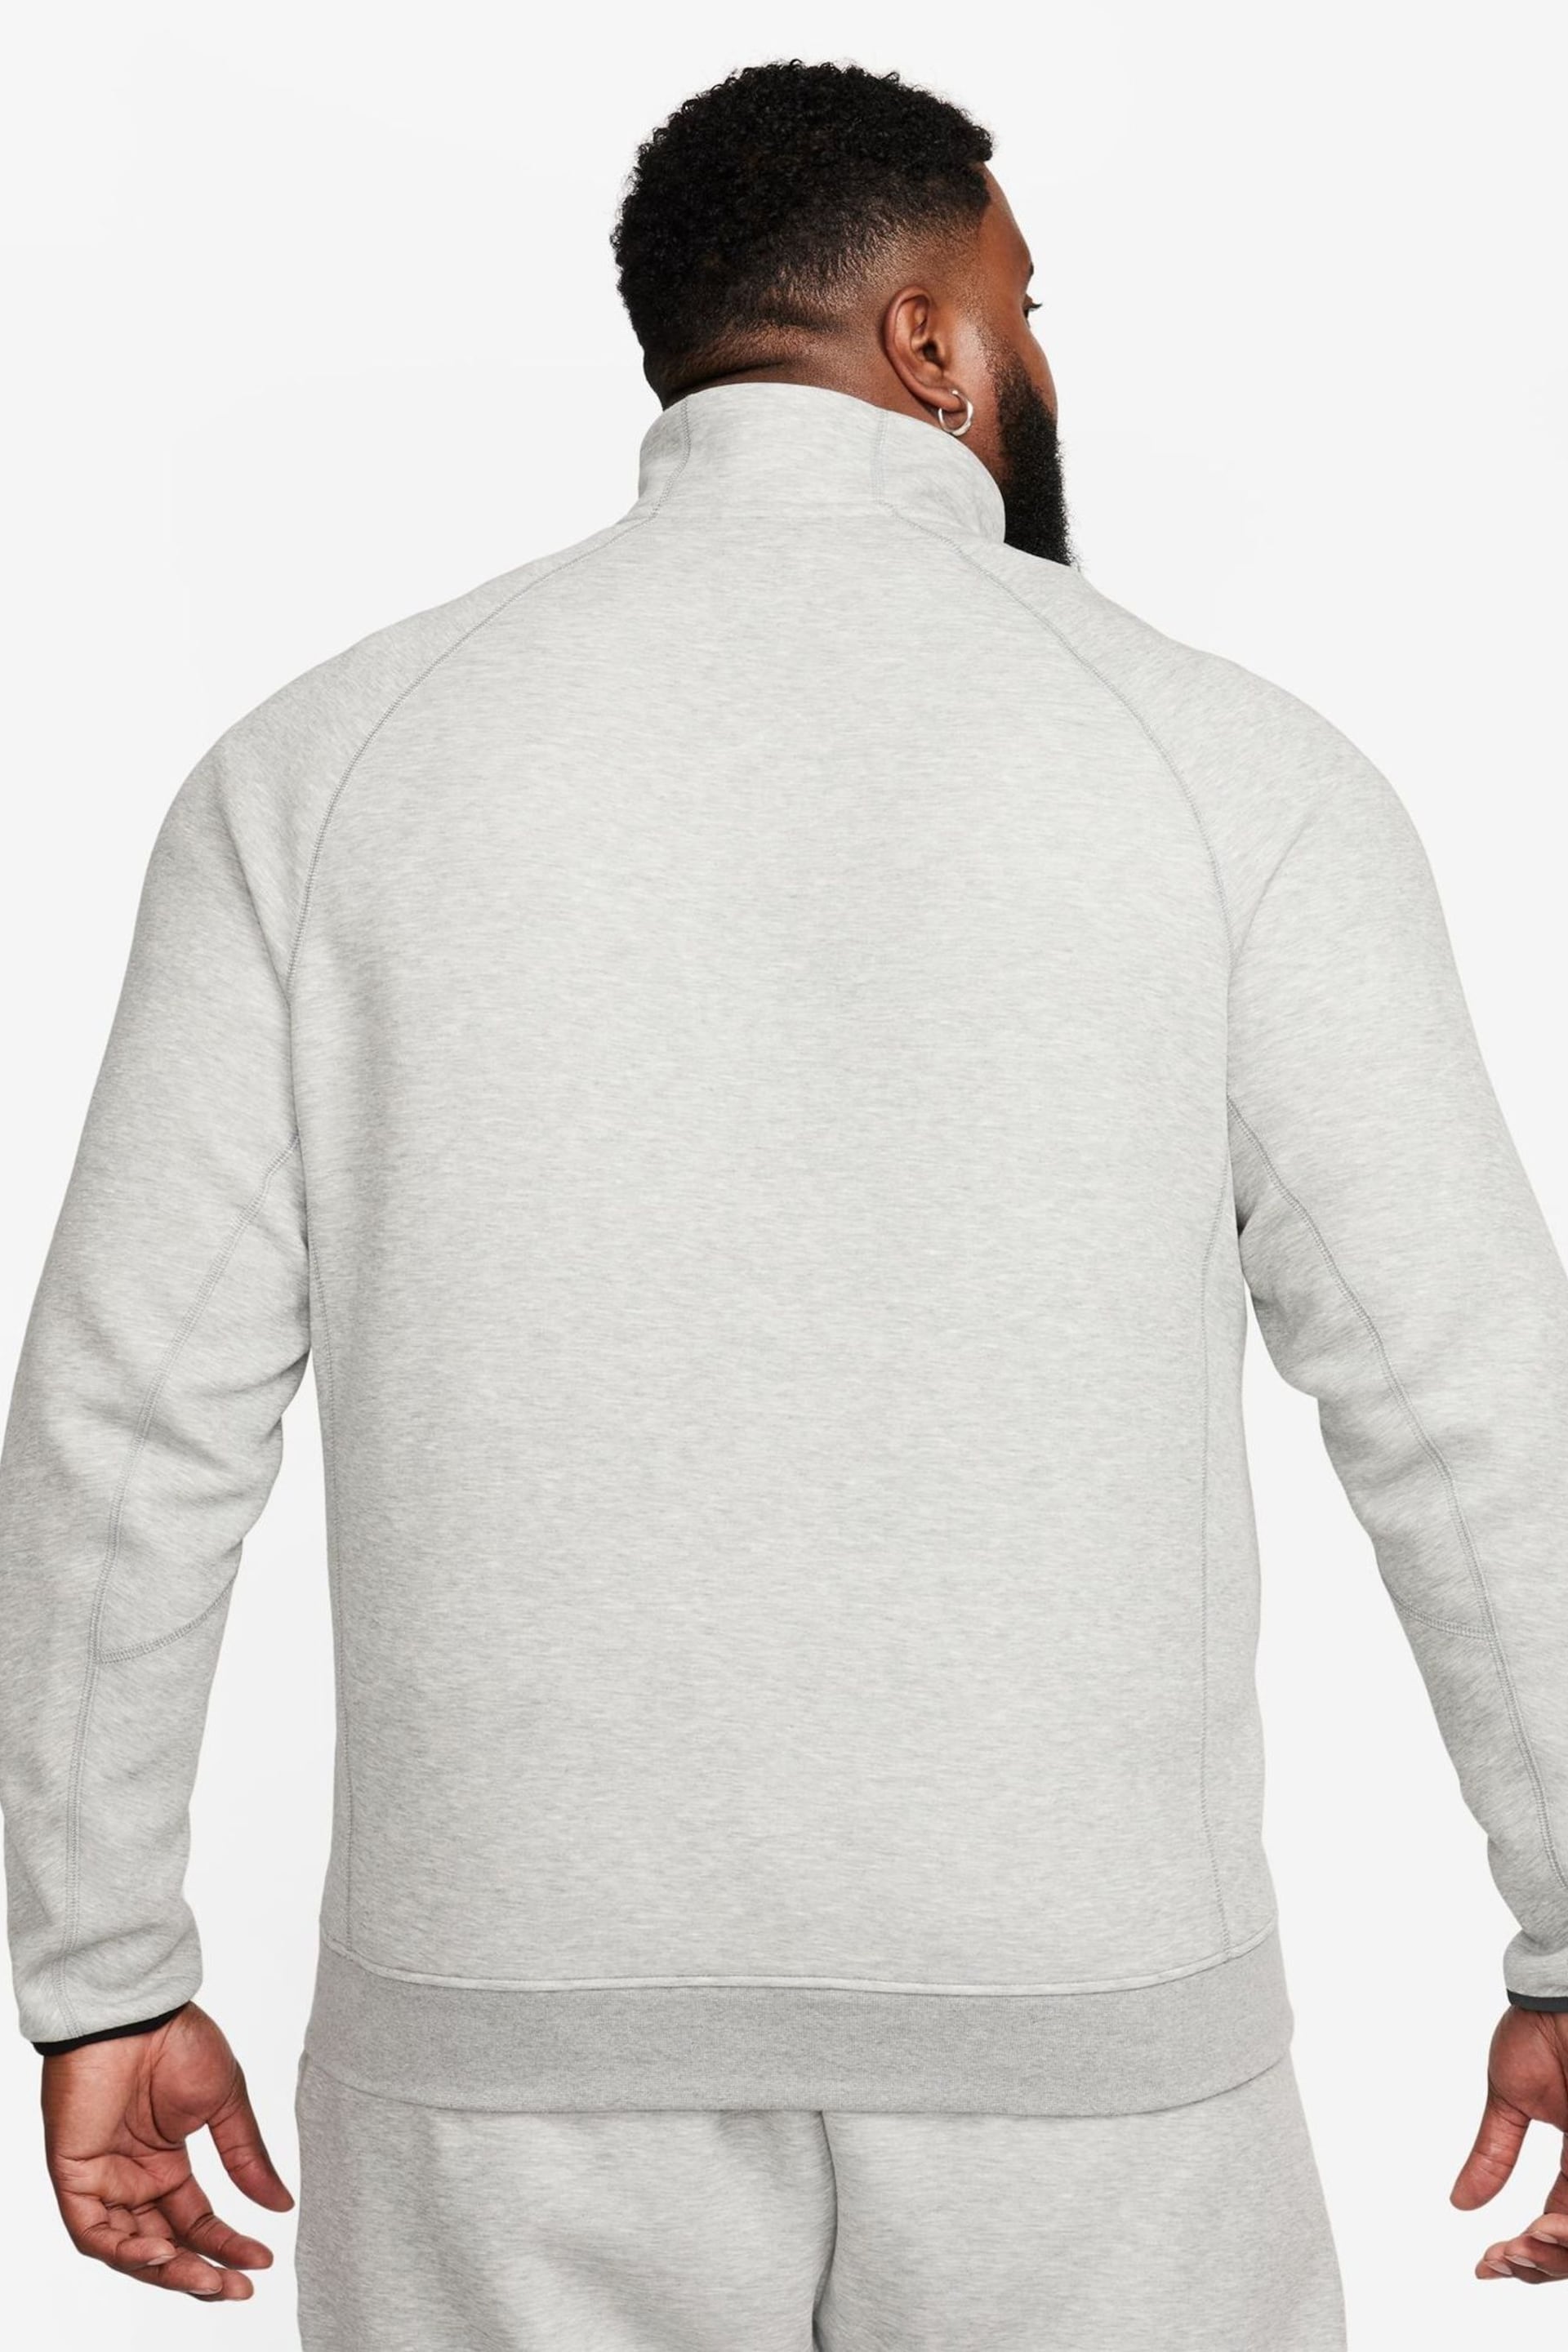 Nike Grey Tech Fleece Half Zip Sweatshirt - Image 4 of 16